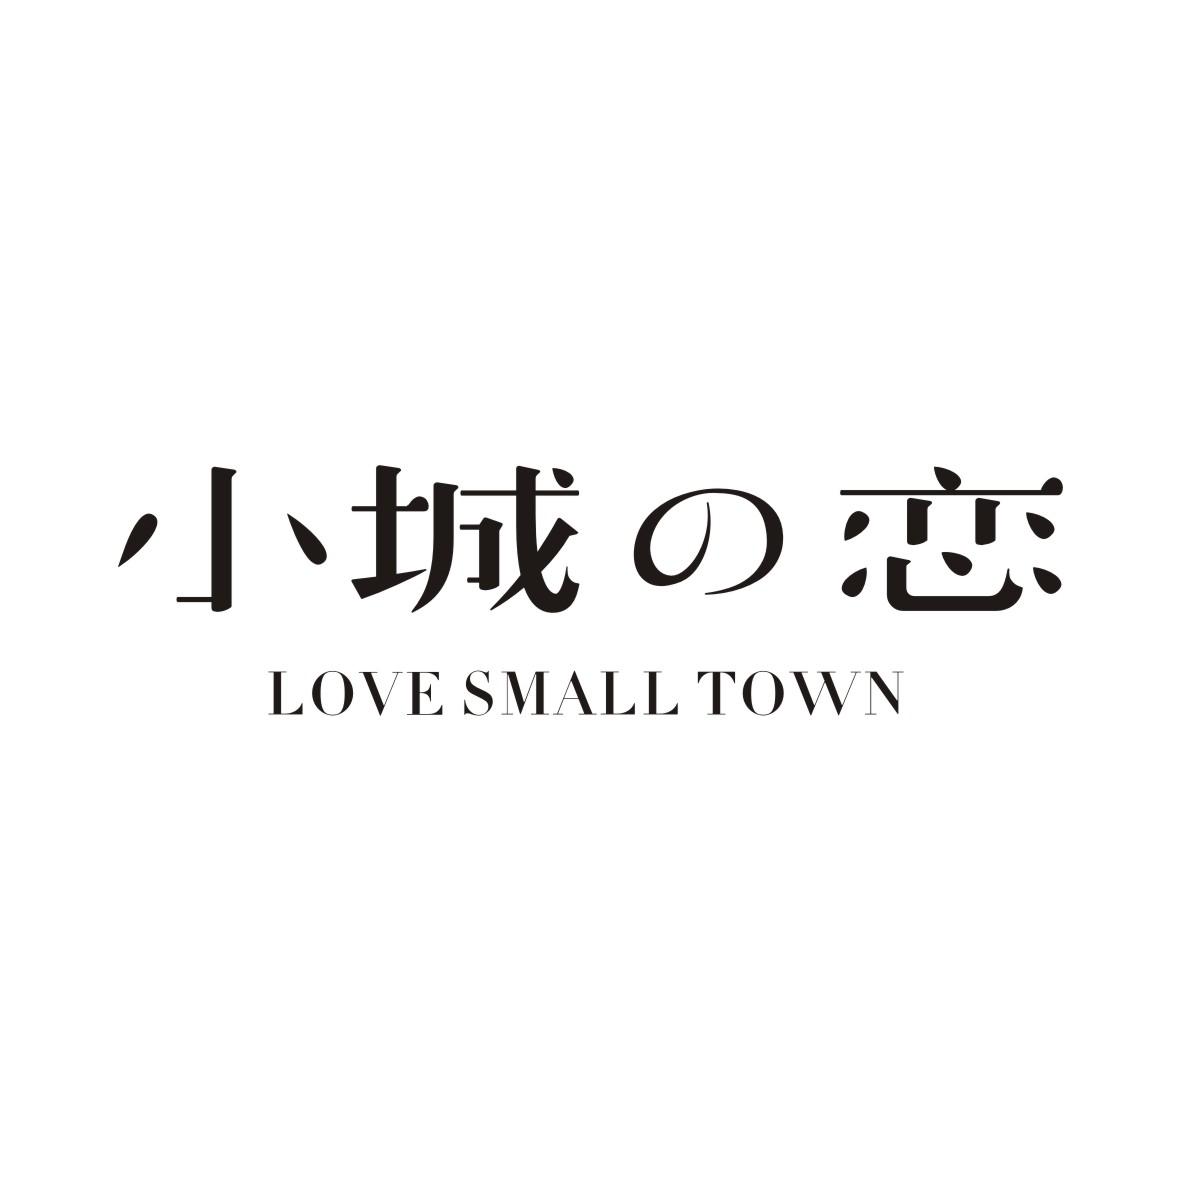 35类-广告销售小城恋 LOVE SMALL TOWN商标转让